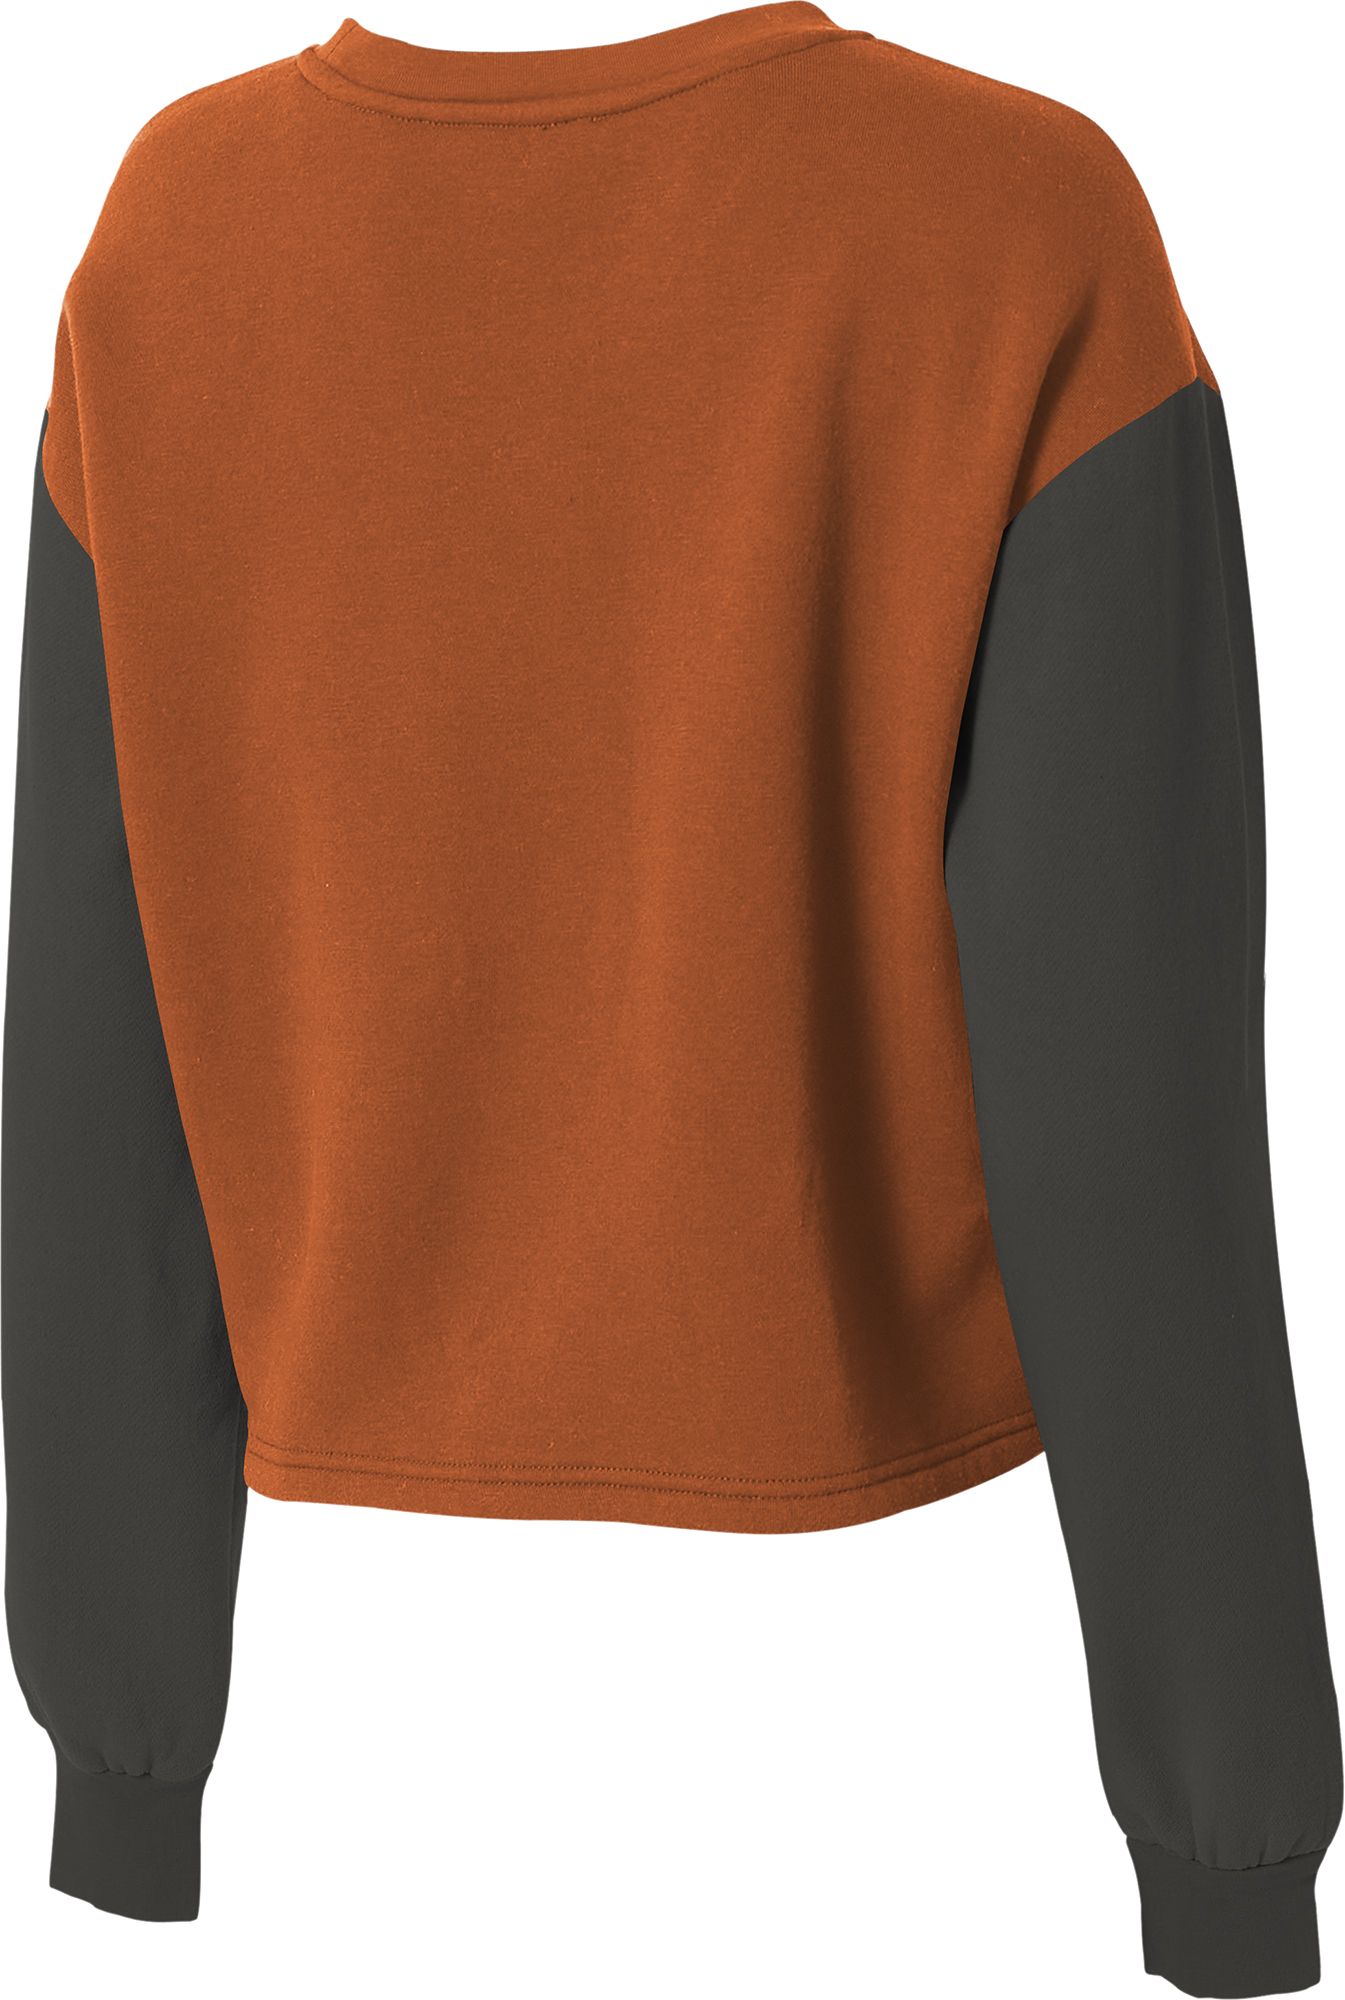 WEAR by Erin Andrews Women's Texas Longhorns Burnt Orange Colorblock Crew Neck Sweatshirt